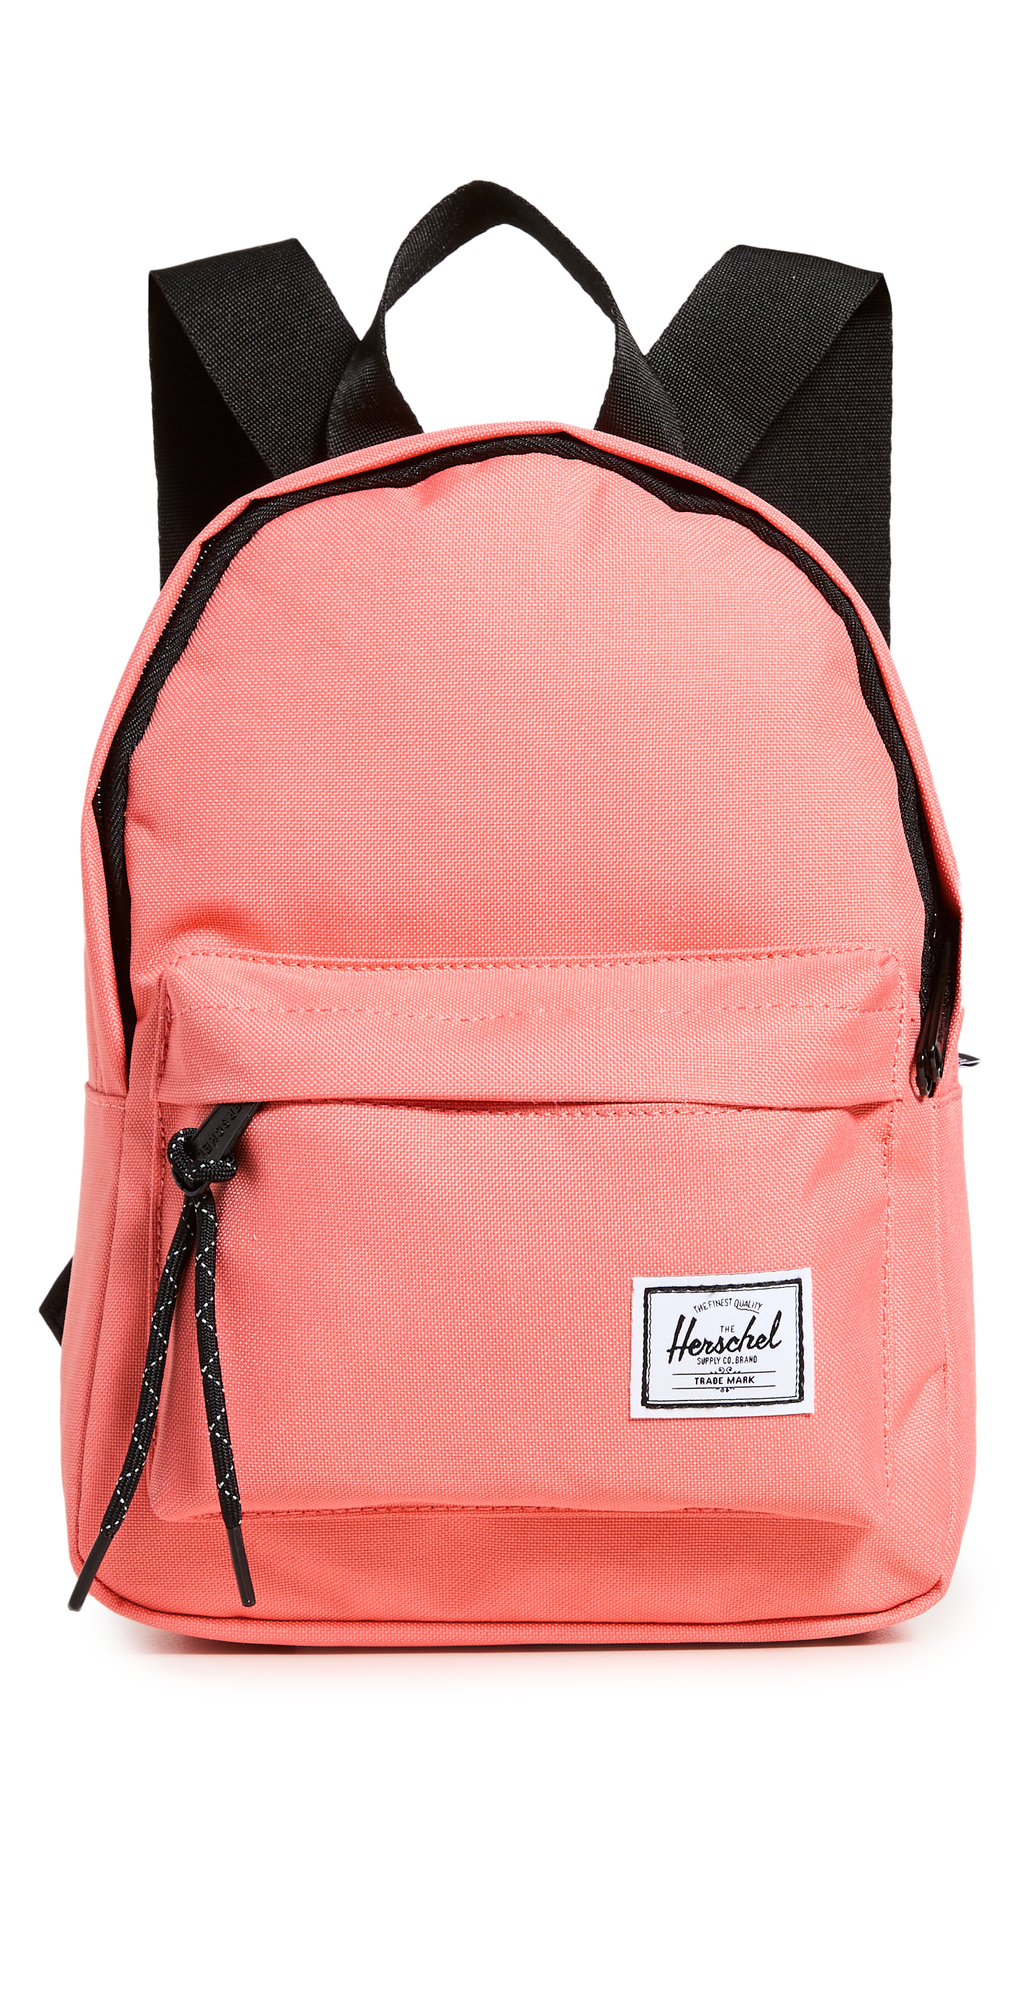 Herschel Supply Co. Herschel Supply Co. Classic Mini Backpack in rose